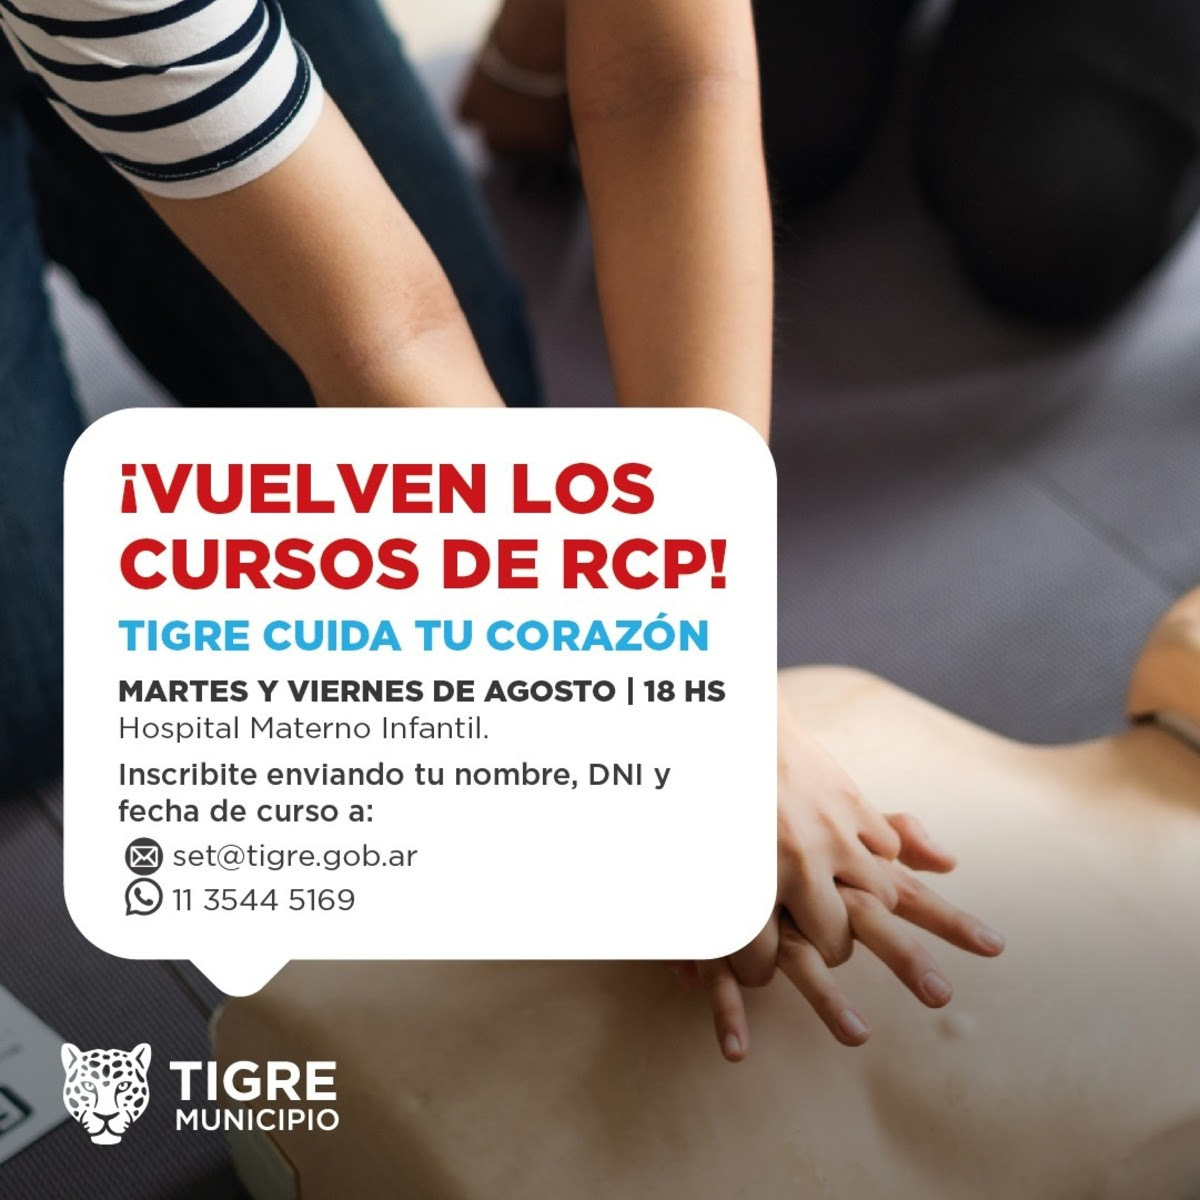 El Municipio de Tigre abrió las inscripciones para sus cursos gratuitos de RCP